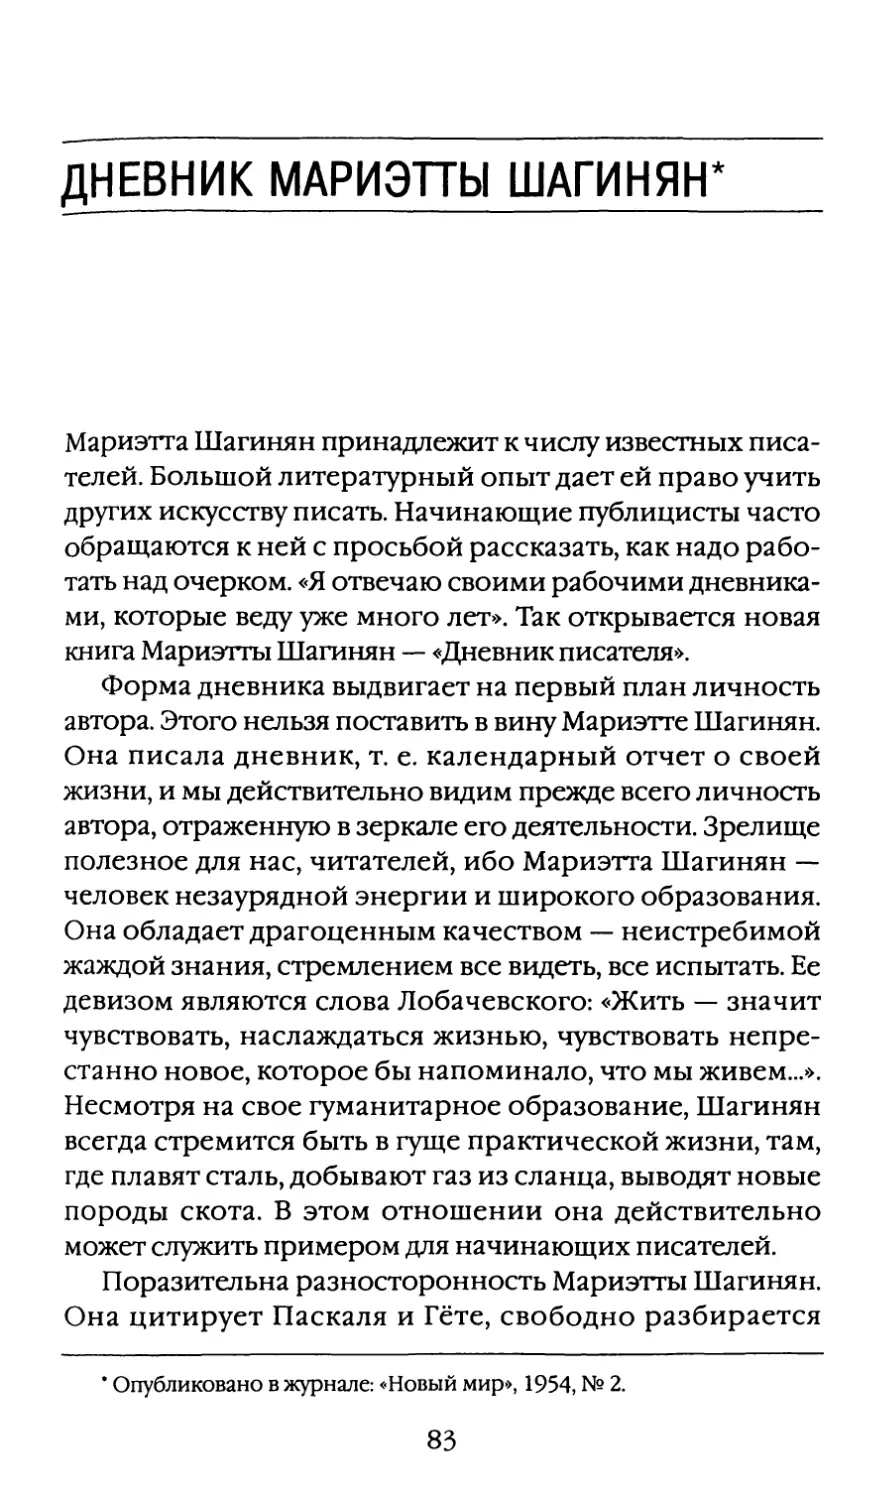 Дневник Мариэтты Шагинян, 1954